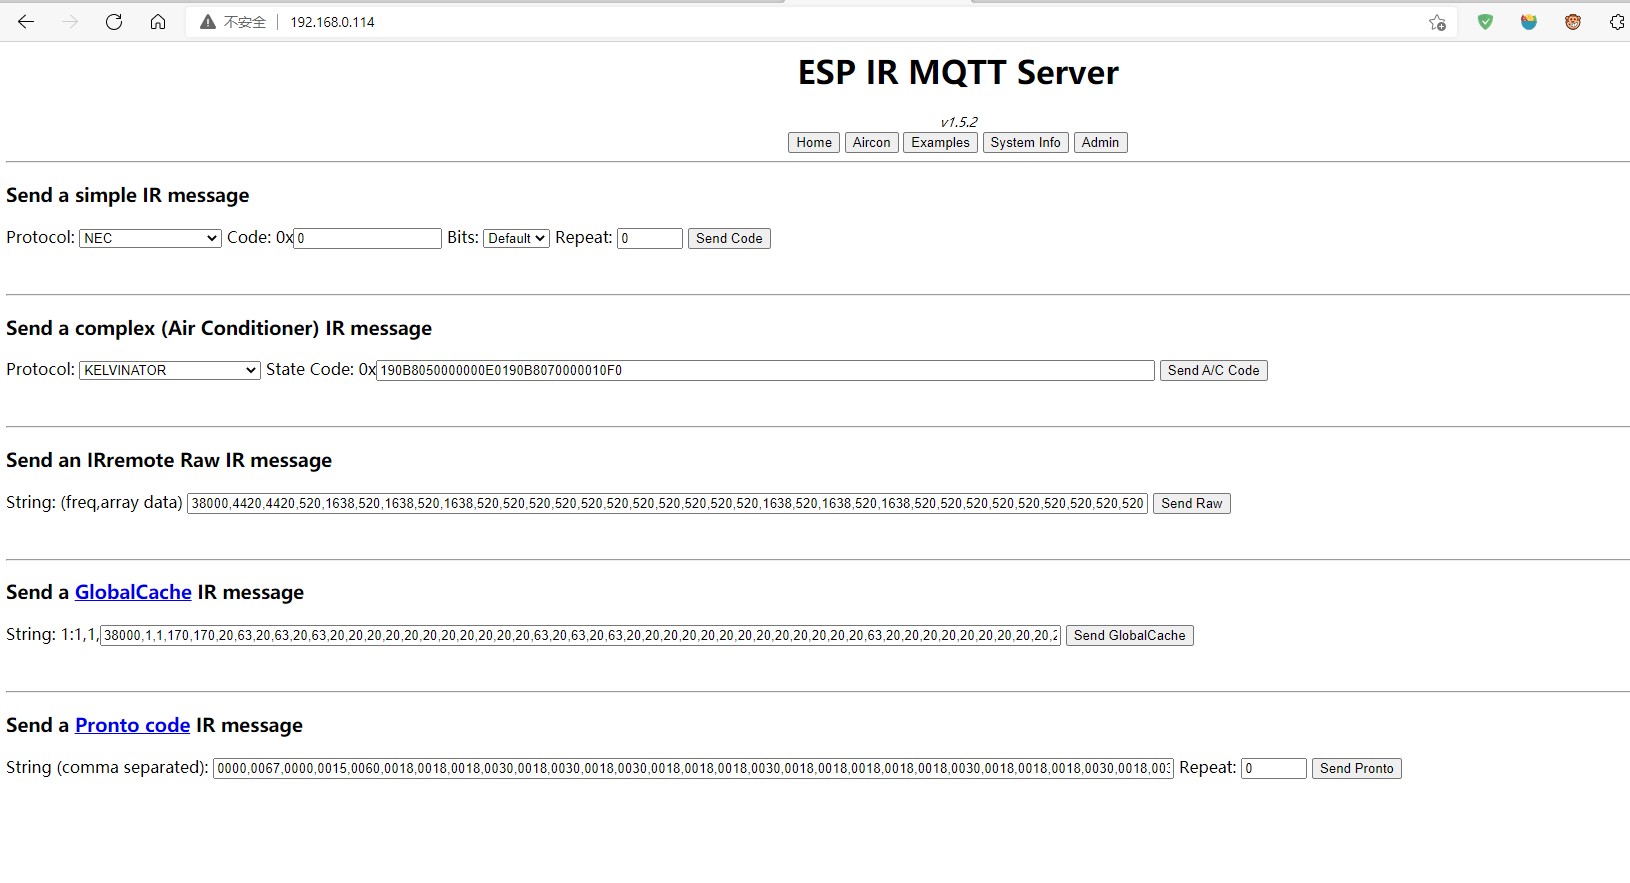 IR MQTT Server